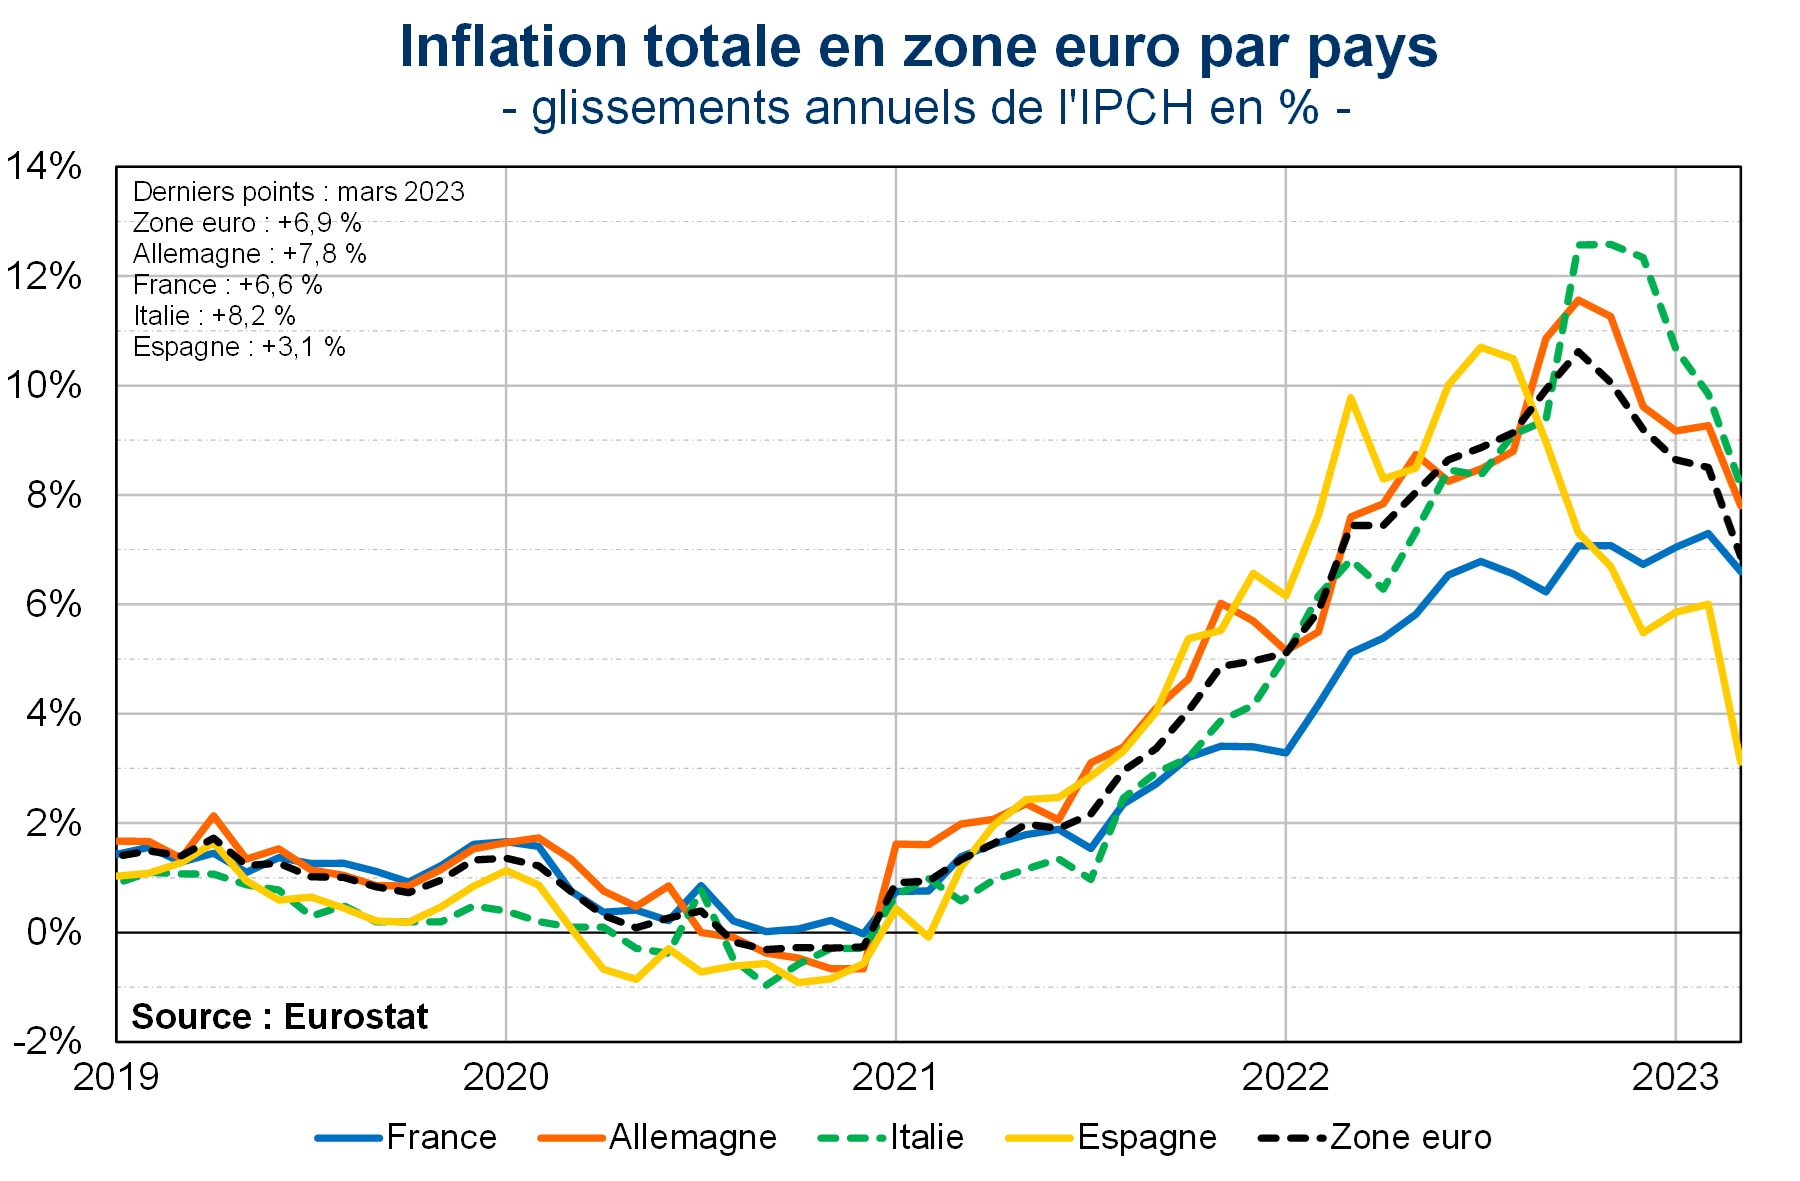 Inflation totale en zone euro par pays